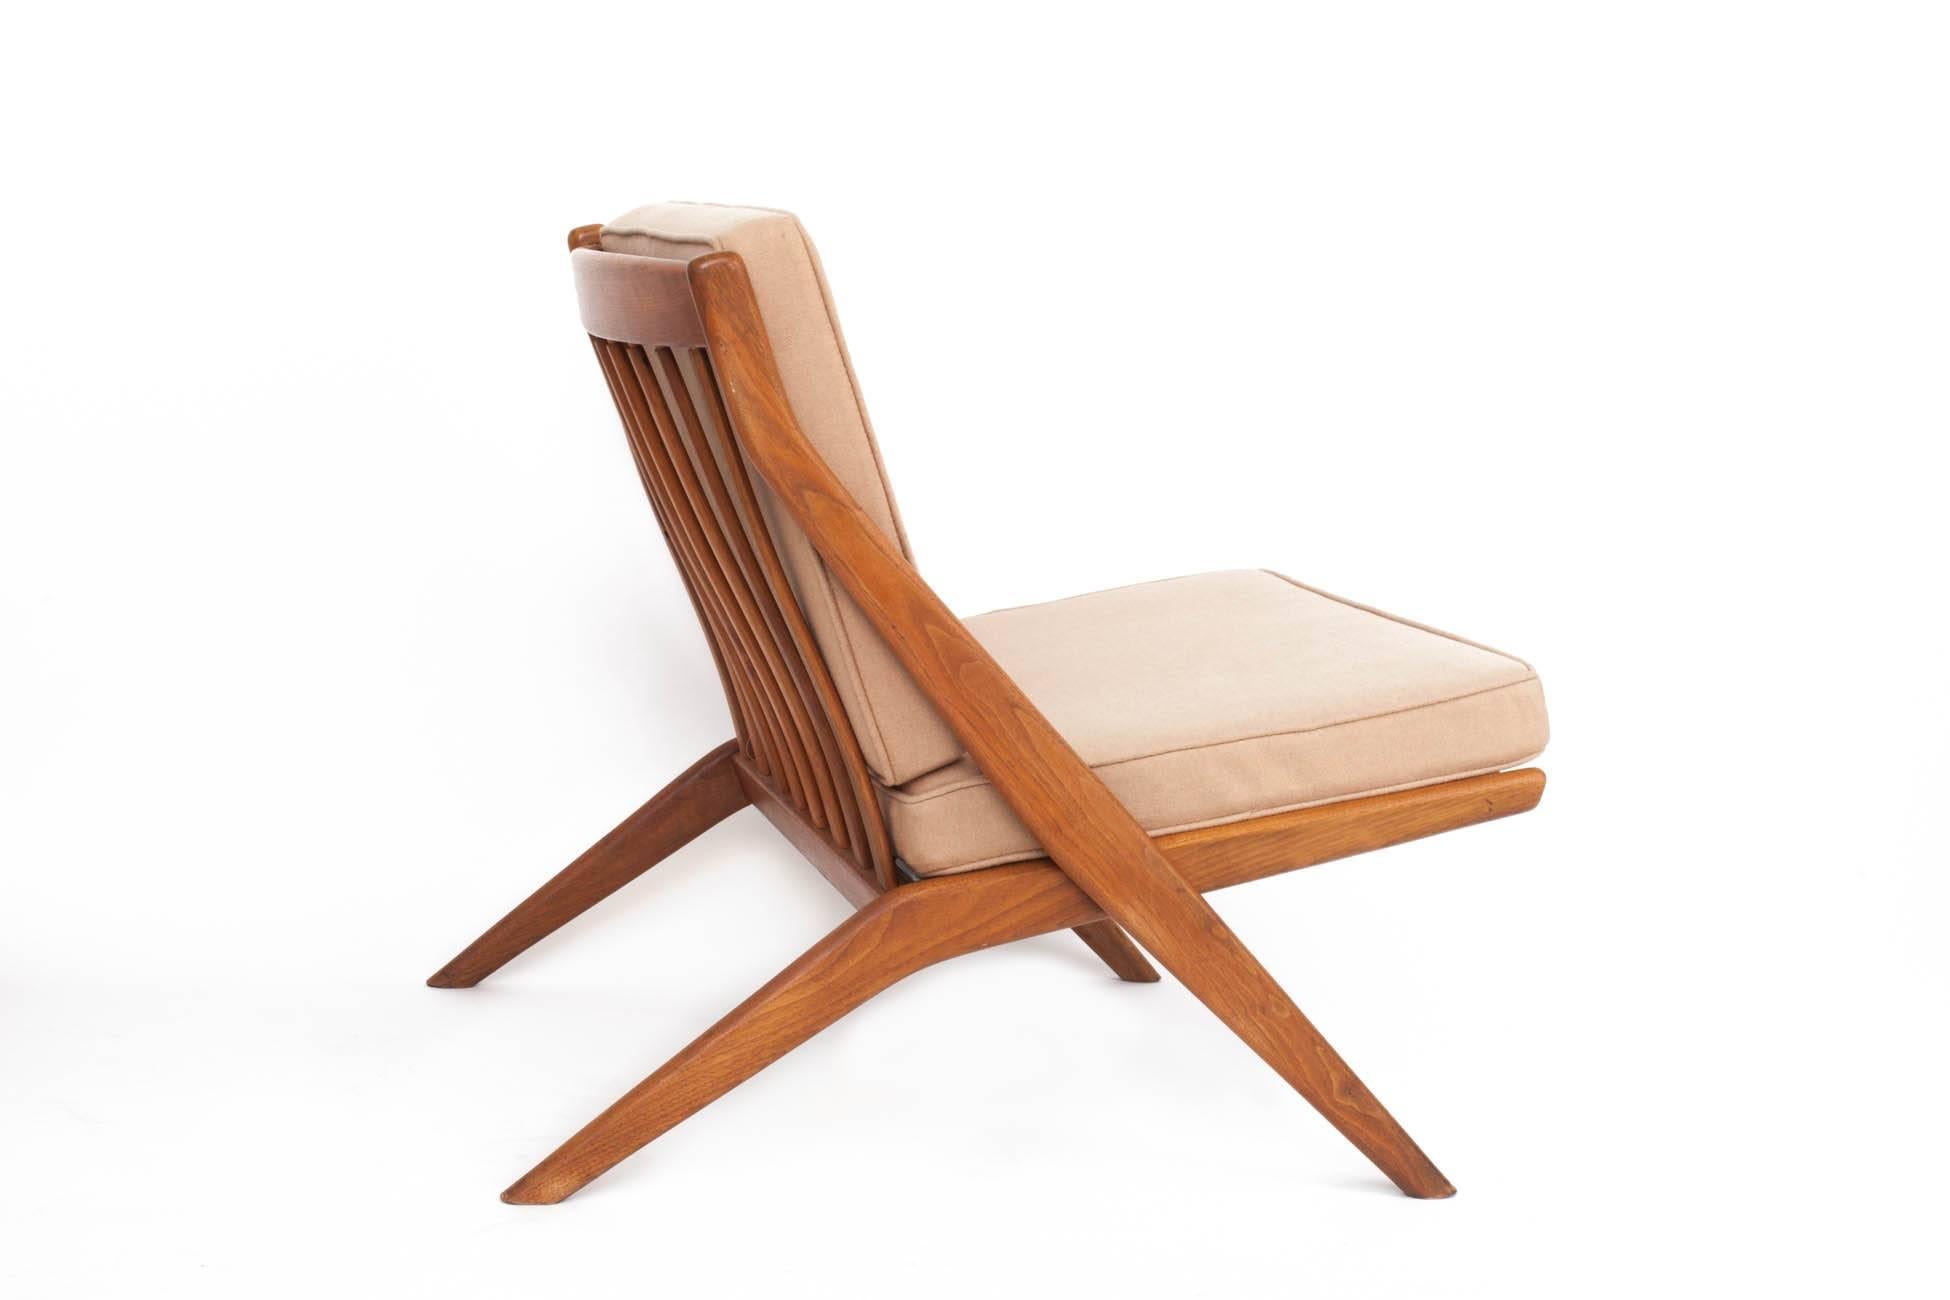 Wool Folke Ohlsson: Pair of Tan Scandinavian Modern Scissor Chairs in Walnut, 1950's